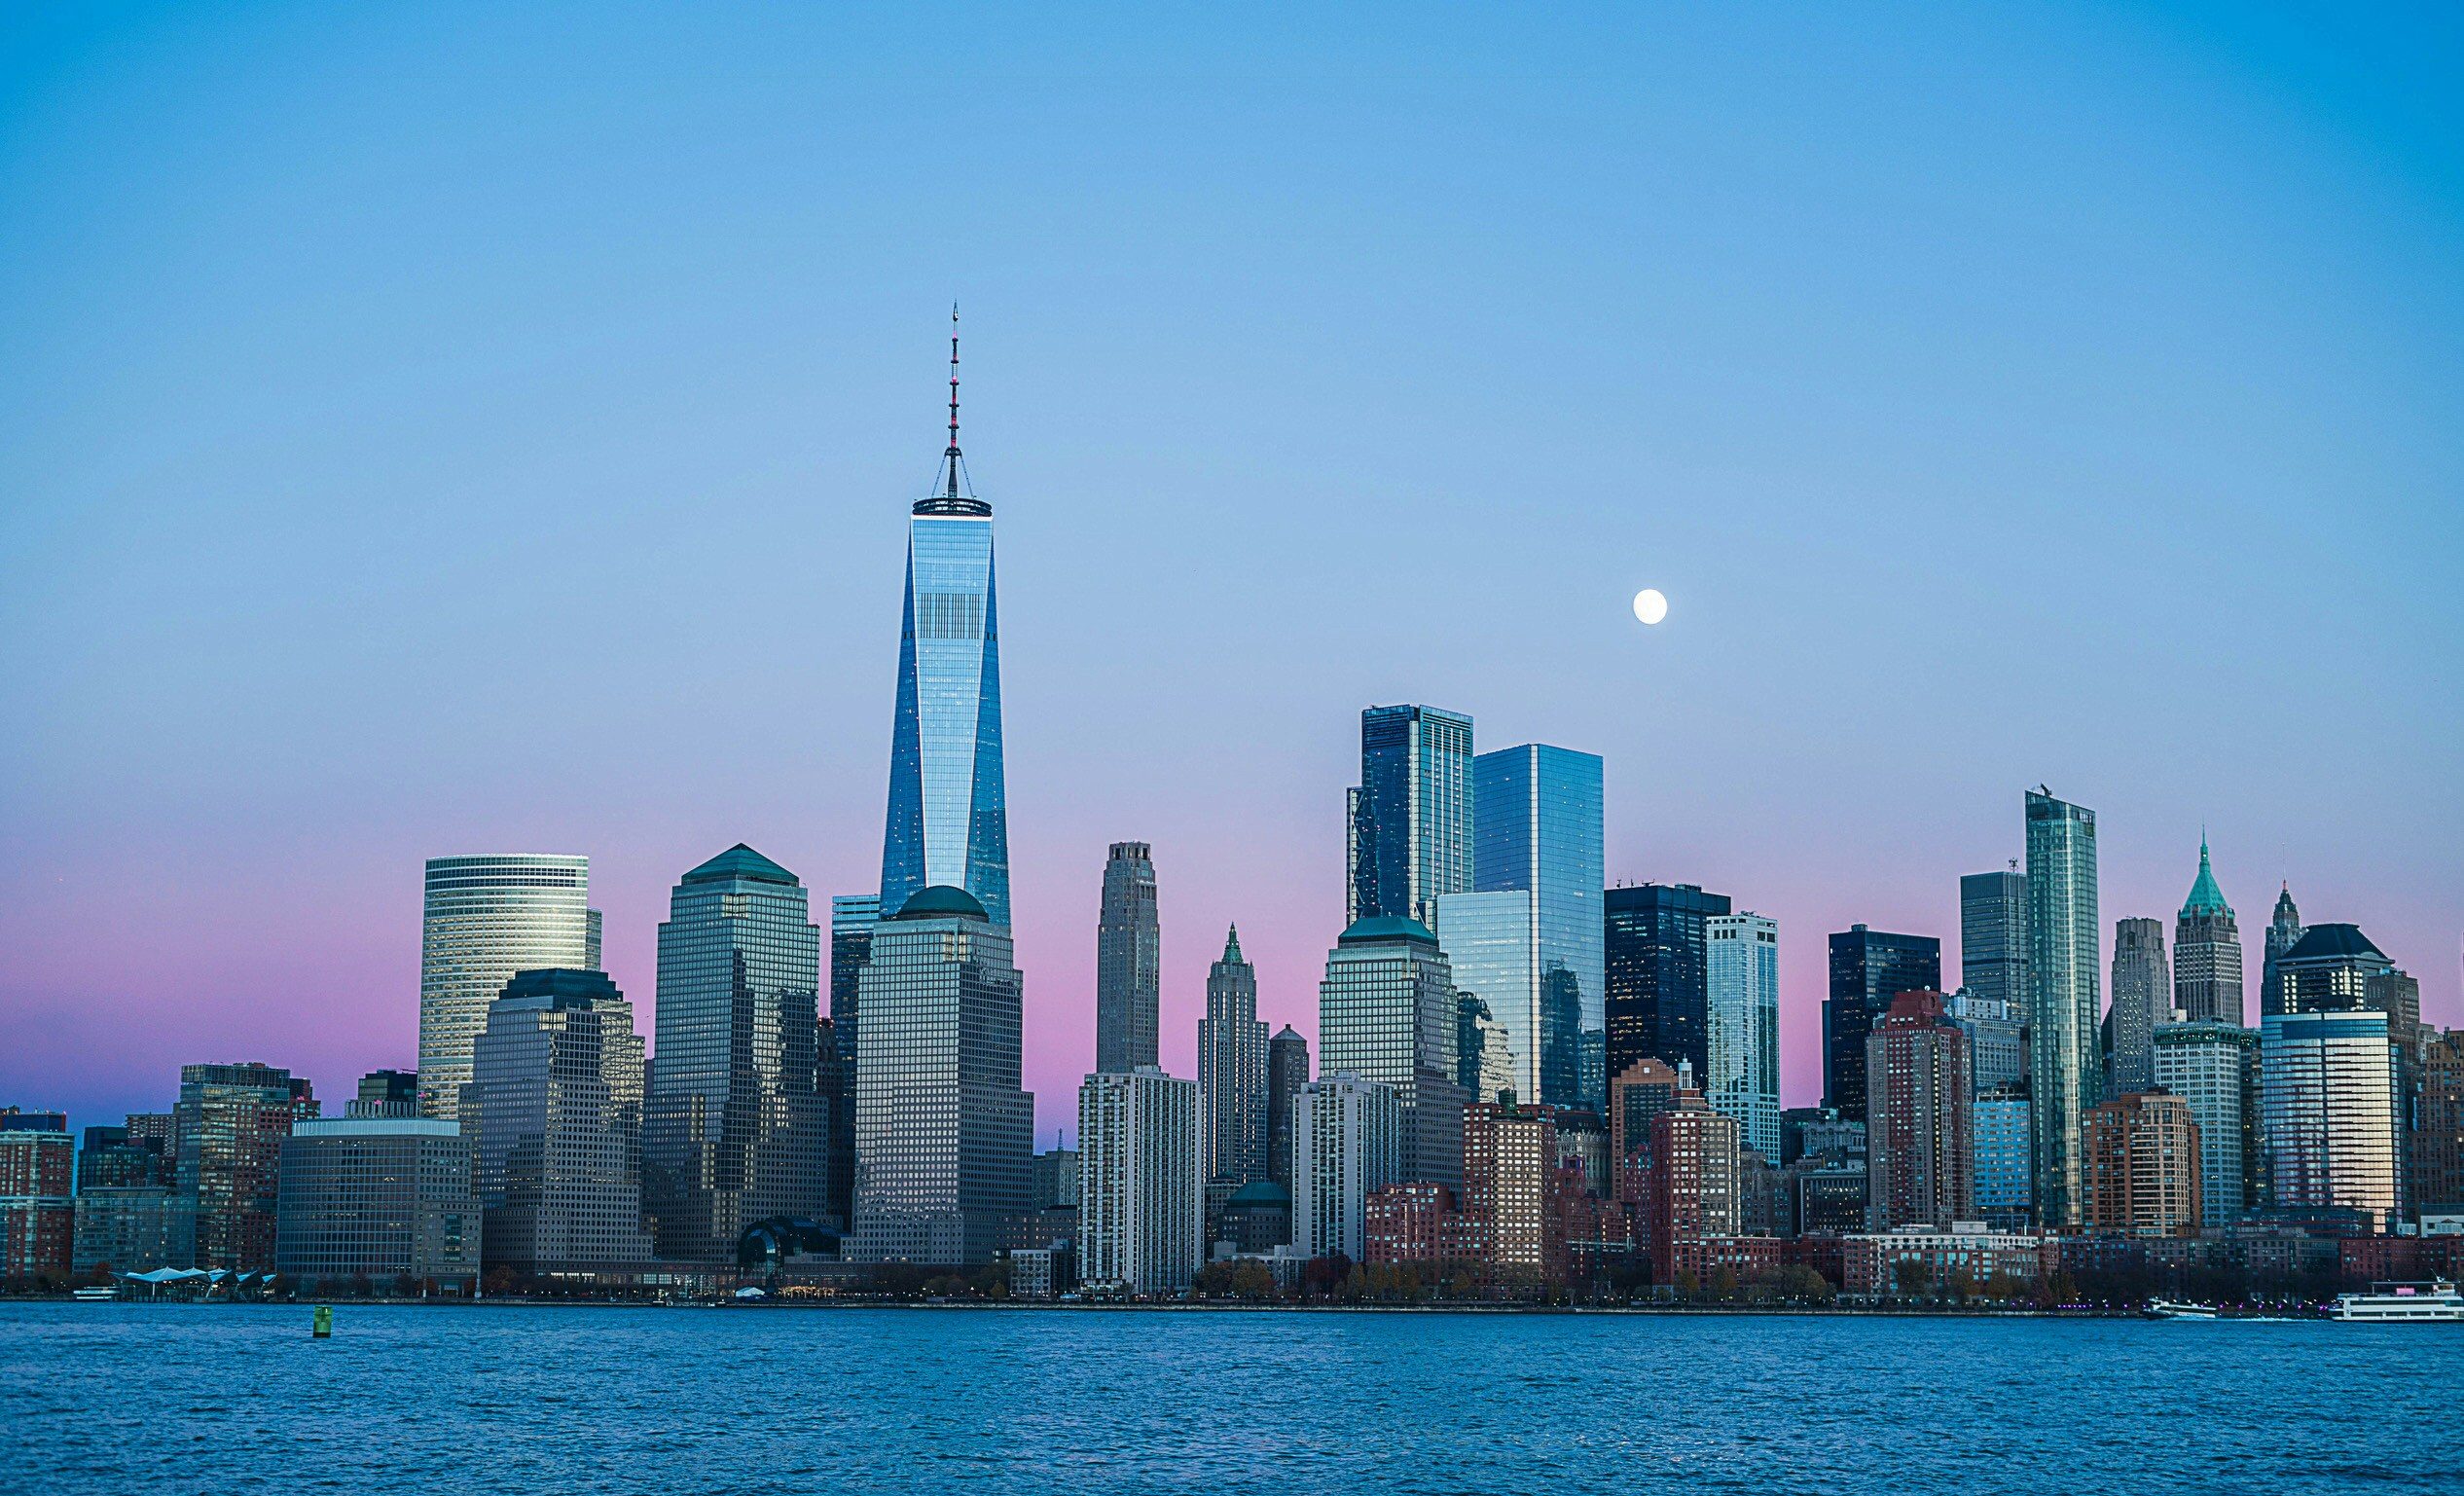 Le World Trade Center : Une nouvelle tour pour le commerce mondial ?